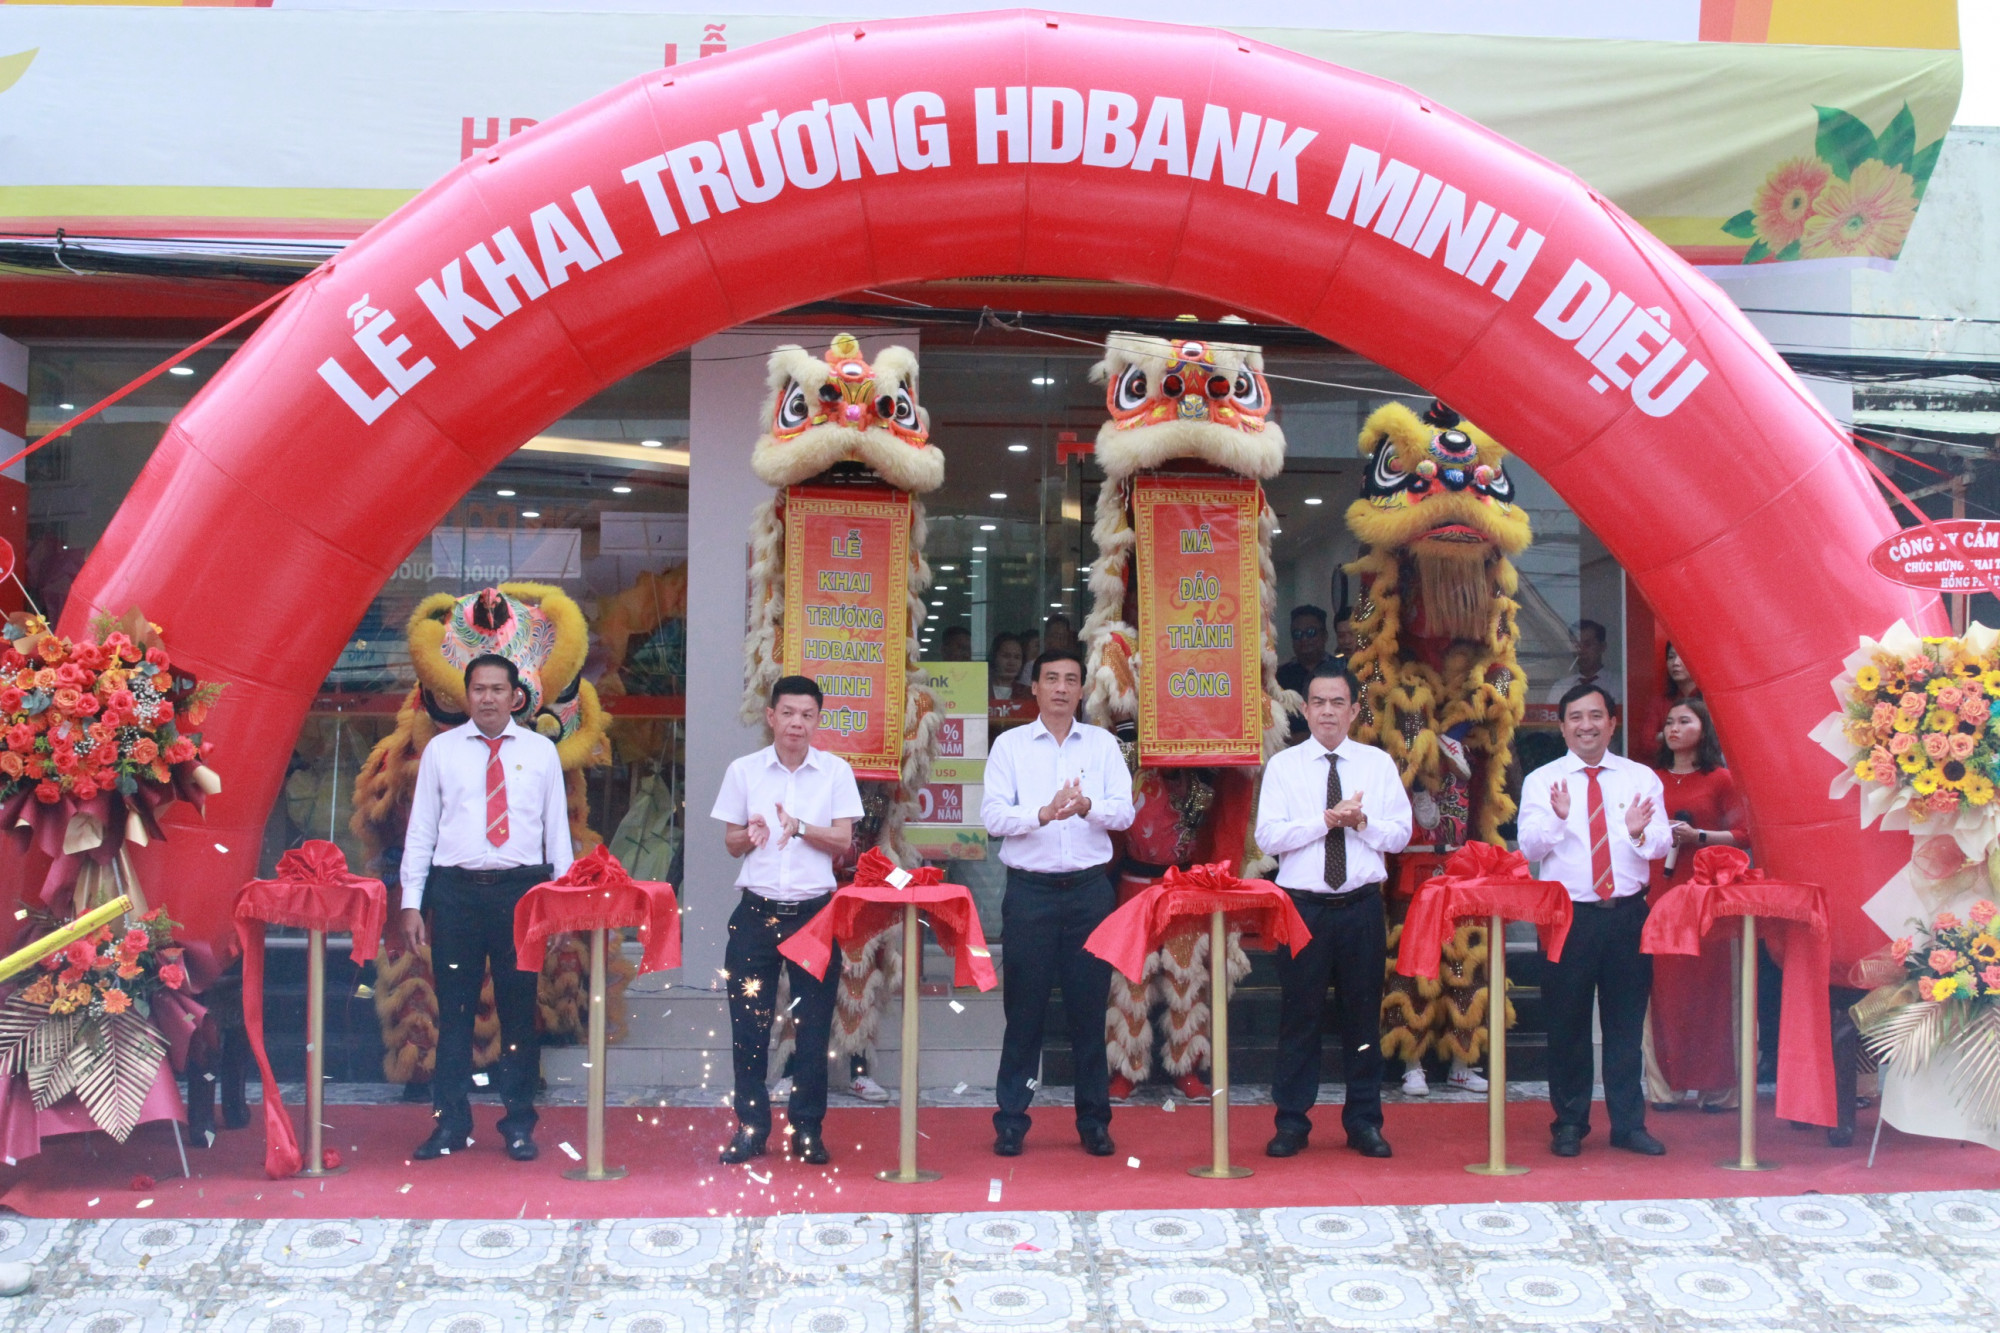 Ngày 27/9, HDBank Minh Diệu - Bạc Liêu chính thức khai trương tại 603 Quốc lộ 1A, thị trấn Hòa Bình, huyện Hòa Bình, tỉnh Bạc Liêu - Ảnh: HDBank